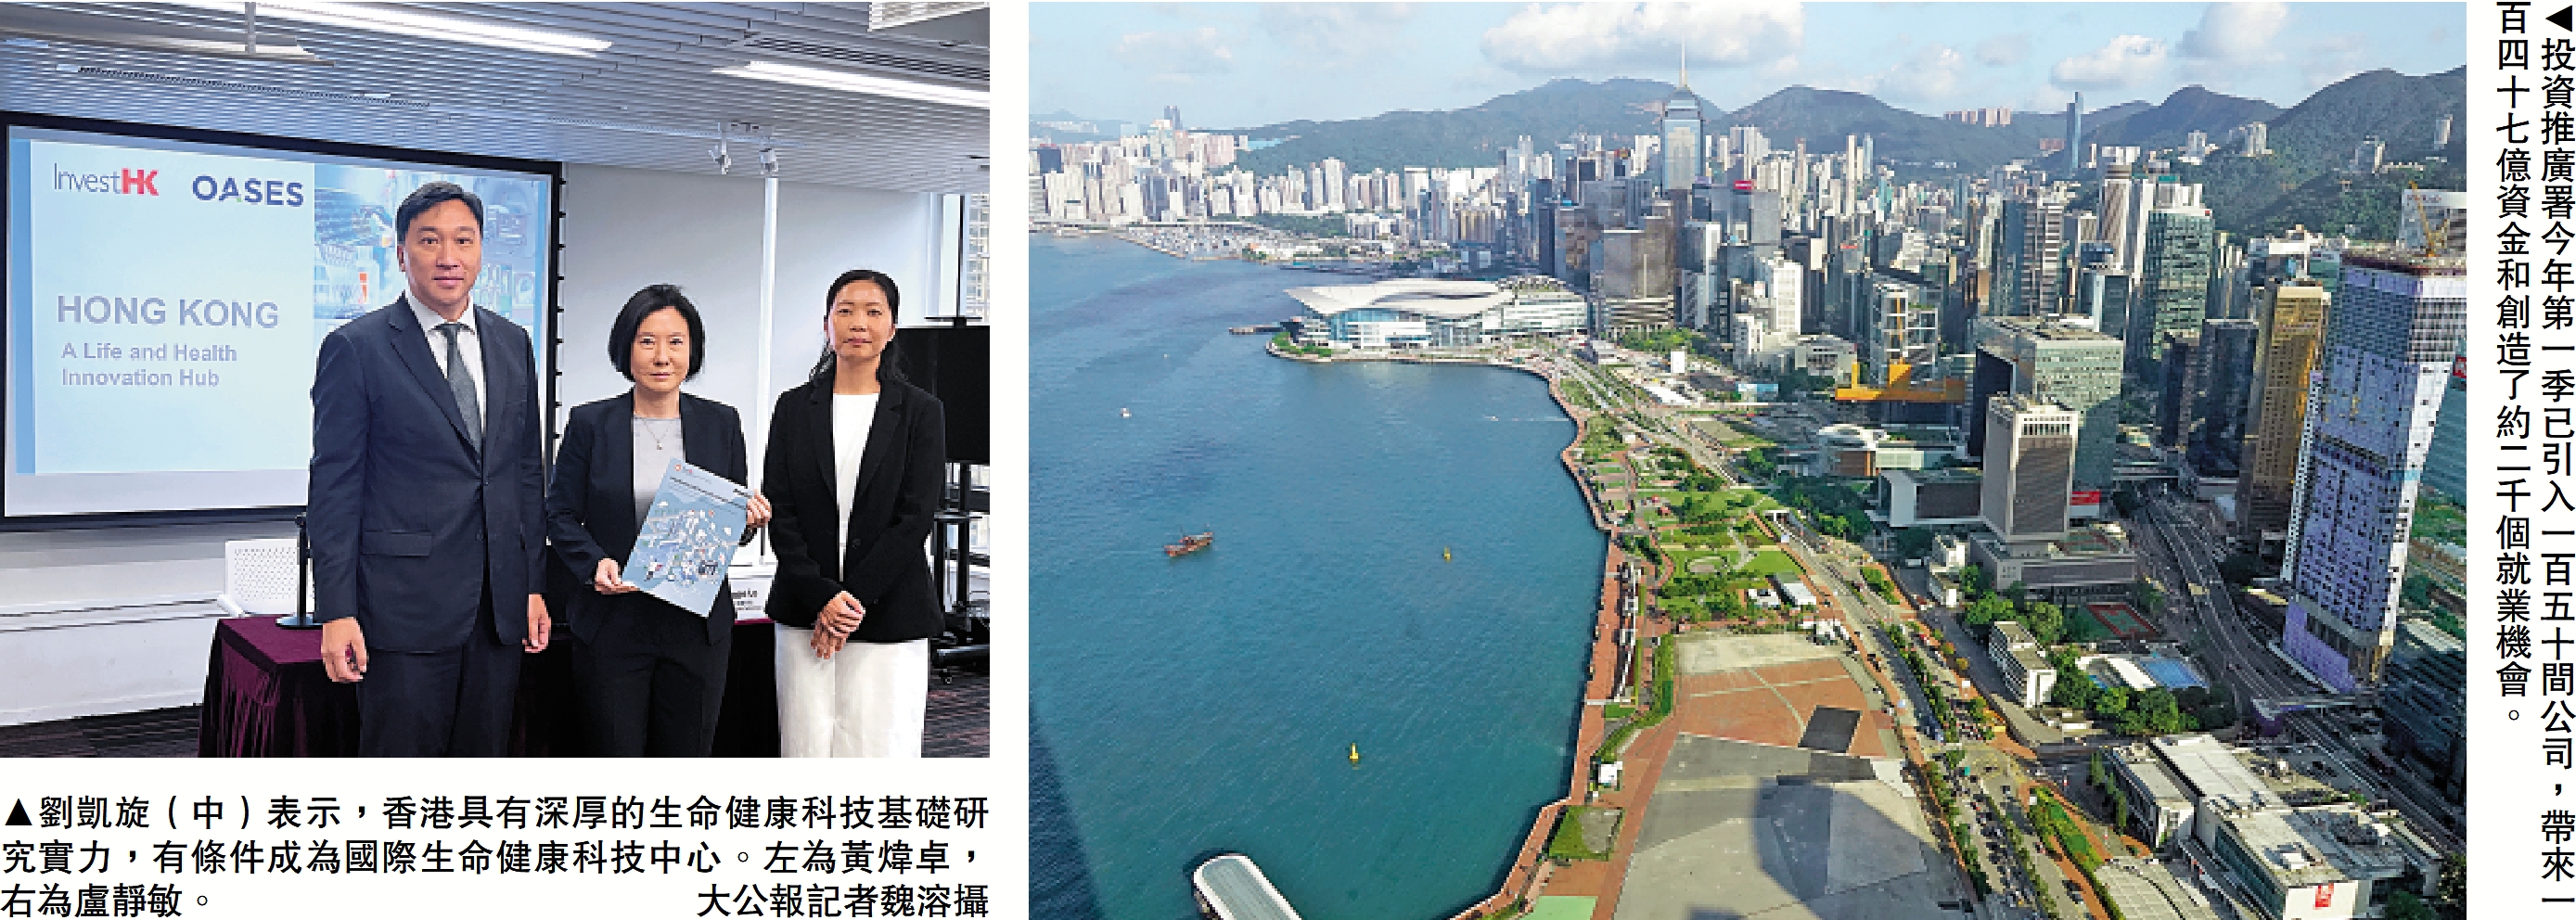 　　左圖：劉凱旋（中）表示，香港具有深厚的生命健康科技基礎研究實力，有條件成為國際生命健康科技中心。左為黃煒卓，右為盧靜敏。\大公報記者魏溶攝；右圖：投資推廣署今年第一季已引入一百五十間公司，帶來一百四十七億資金和創造了約二千個就業機會。